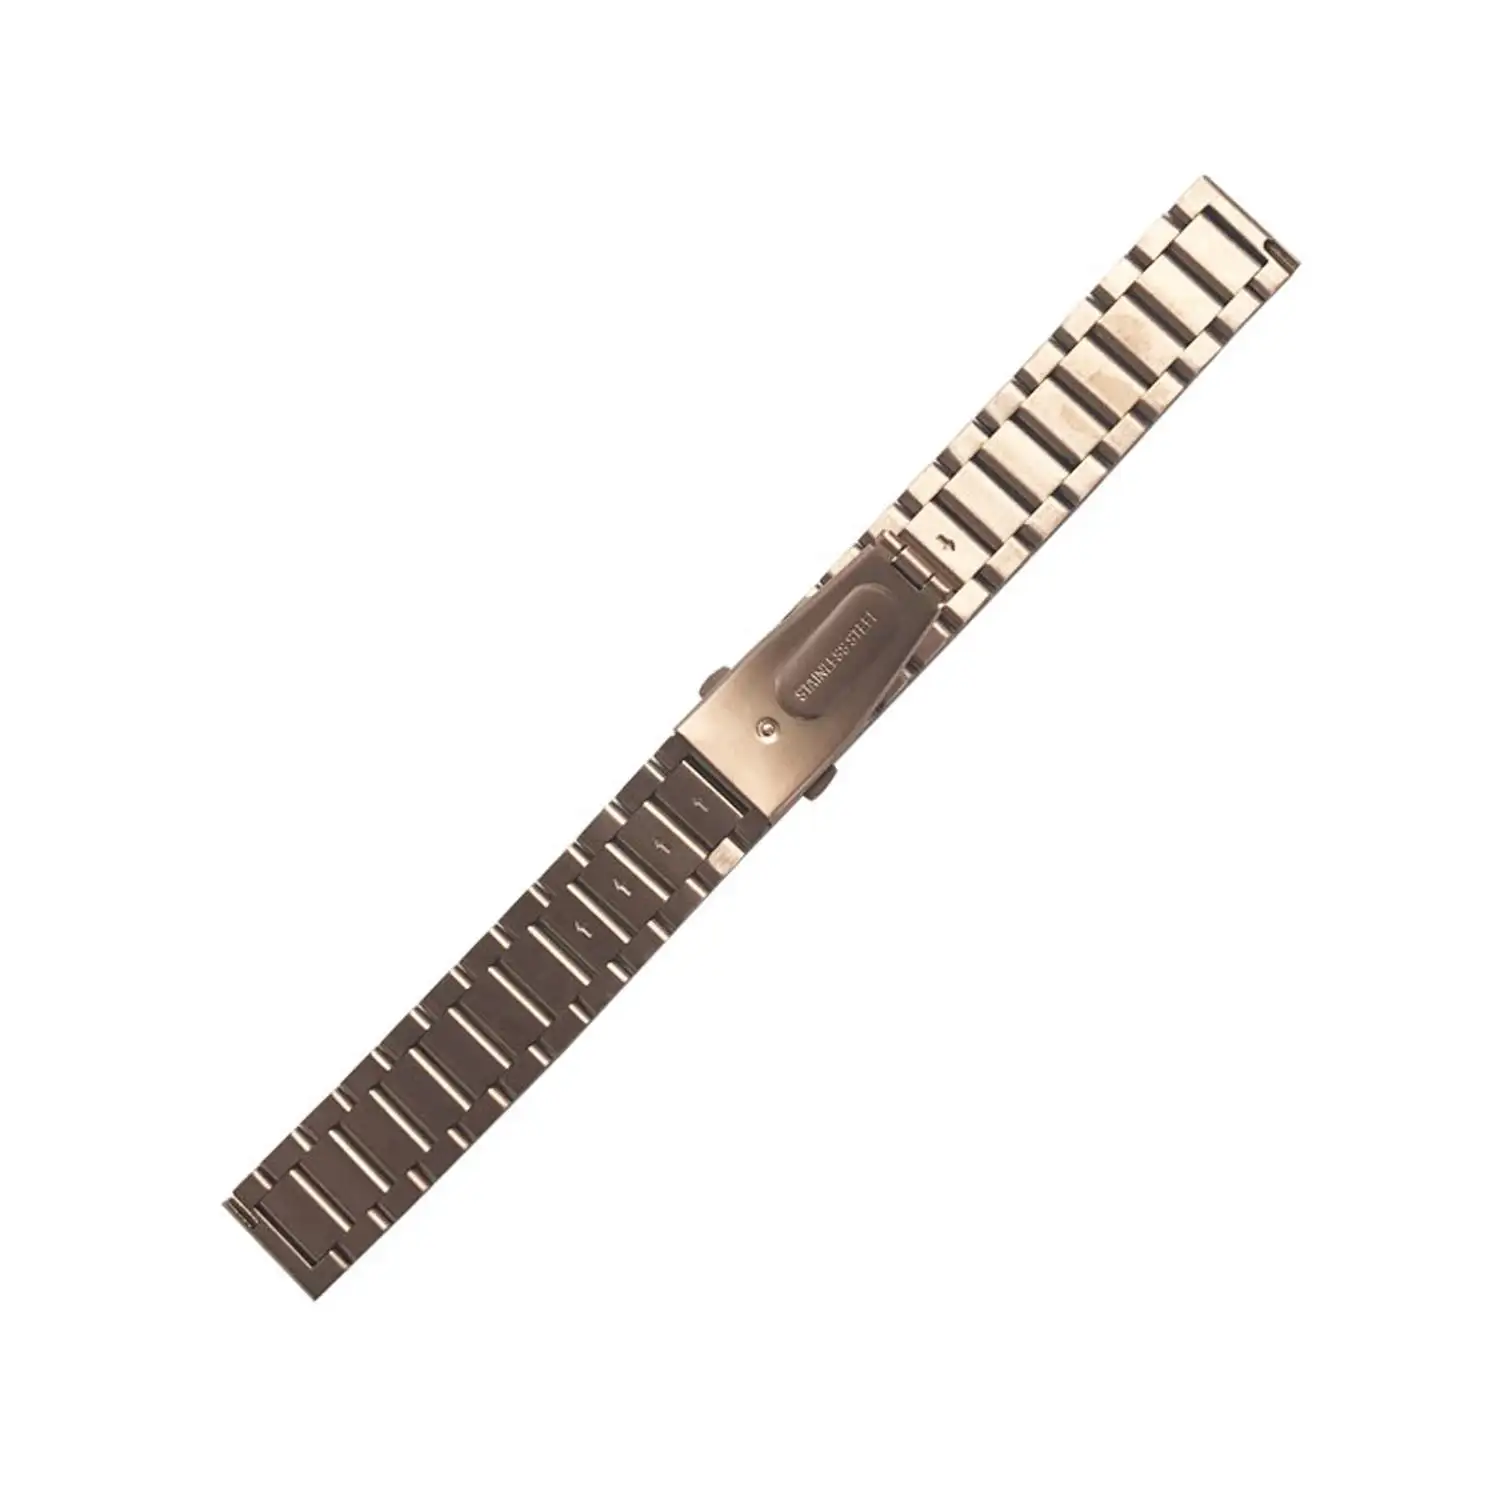 Correa universal de acero inoxidable para relojes de 22mm.Sistema Quick  Release de fácil cambio.